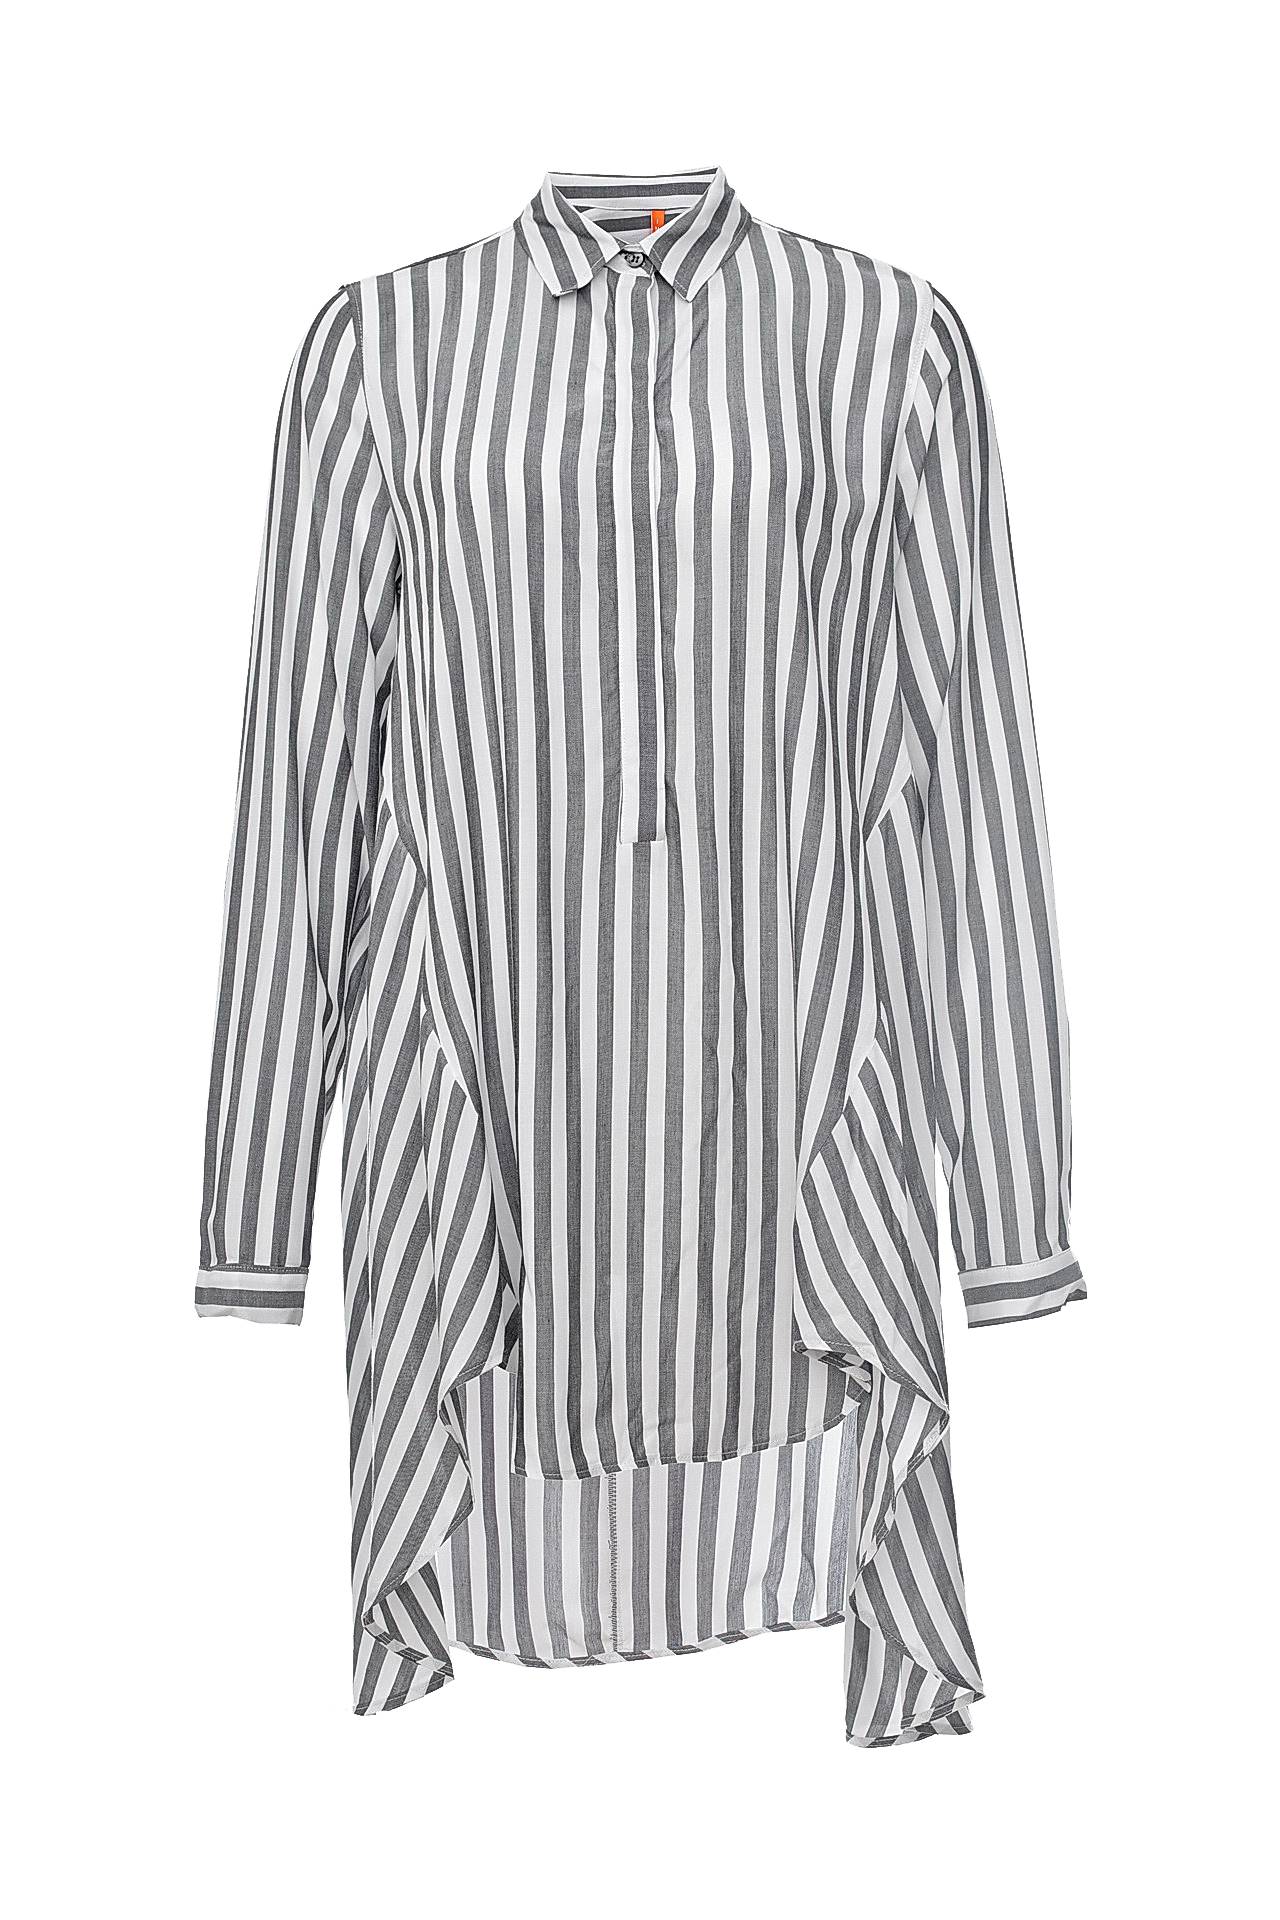 Одежда женская Рубашка IMPERIAL (CED3R36/16.2). Купить за 3450 руб.